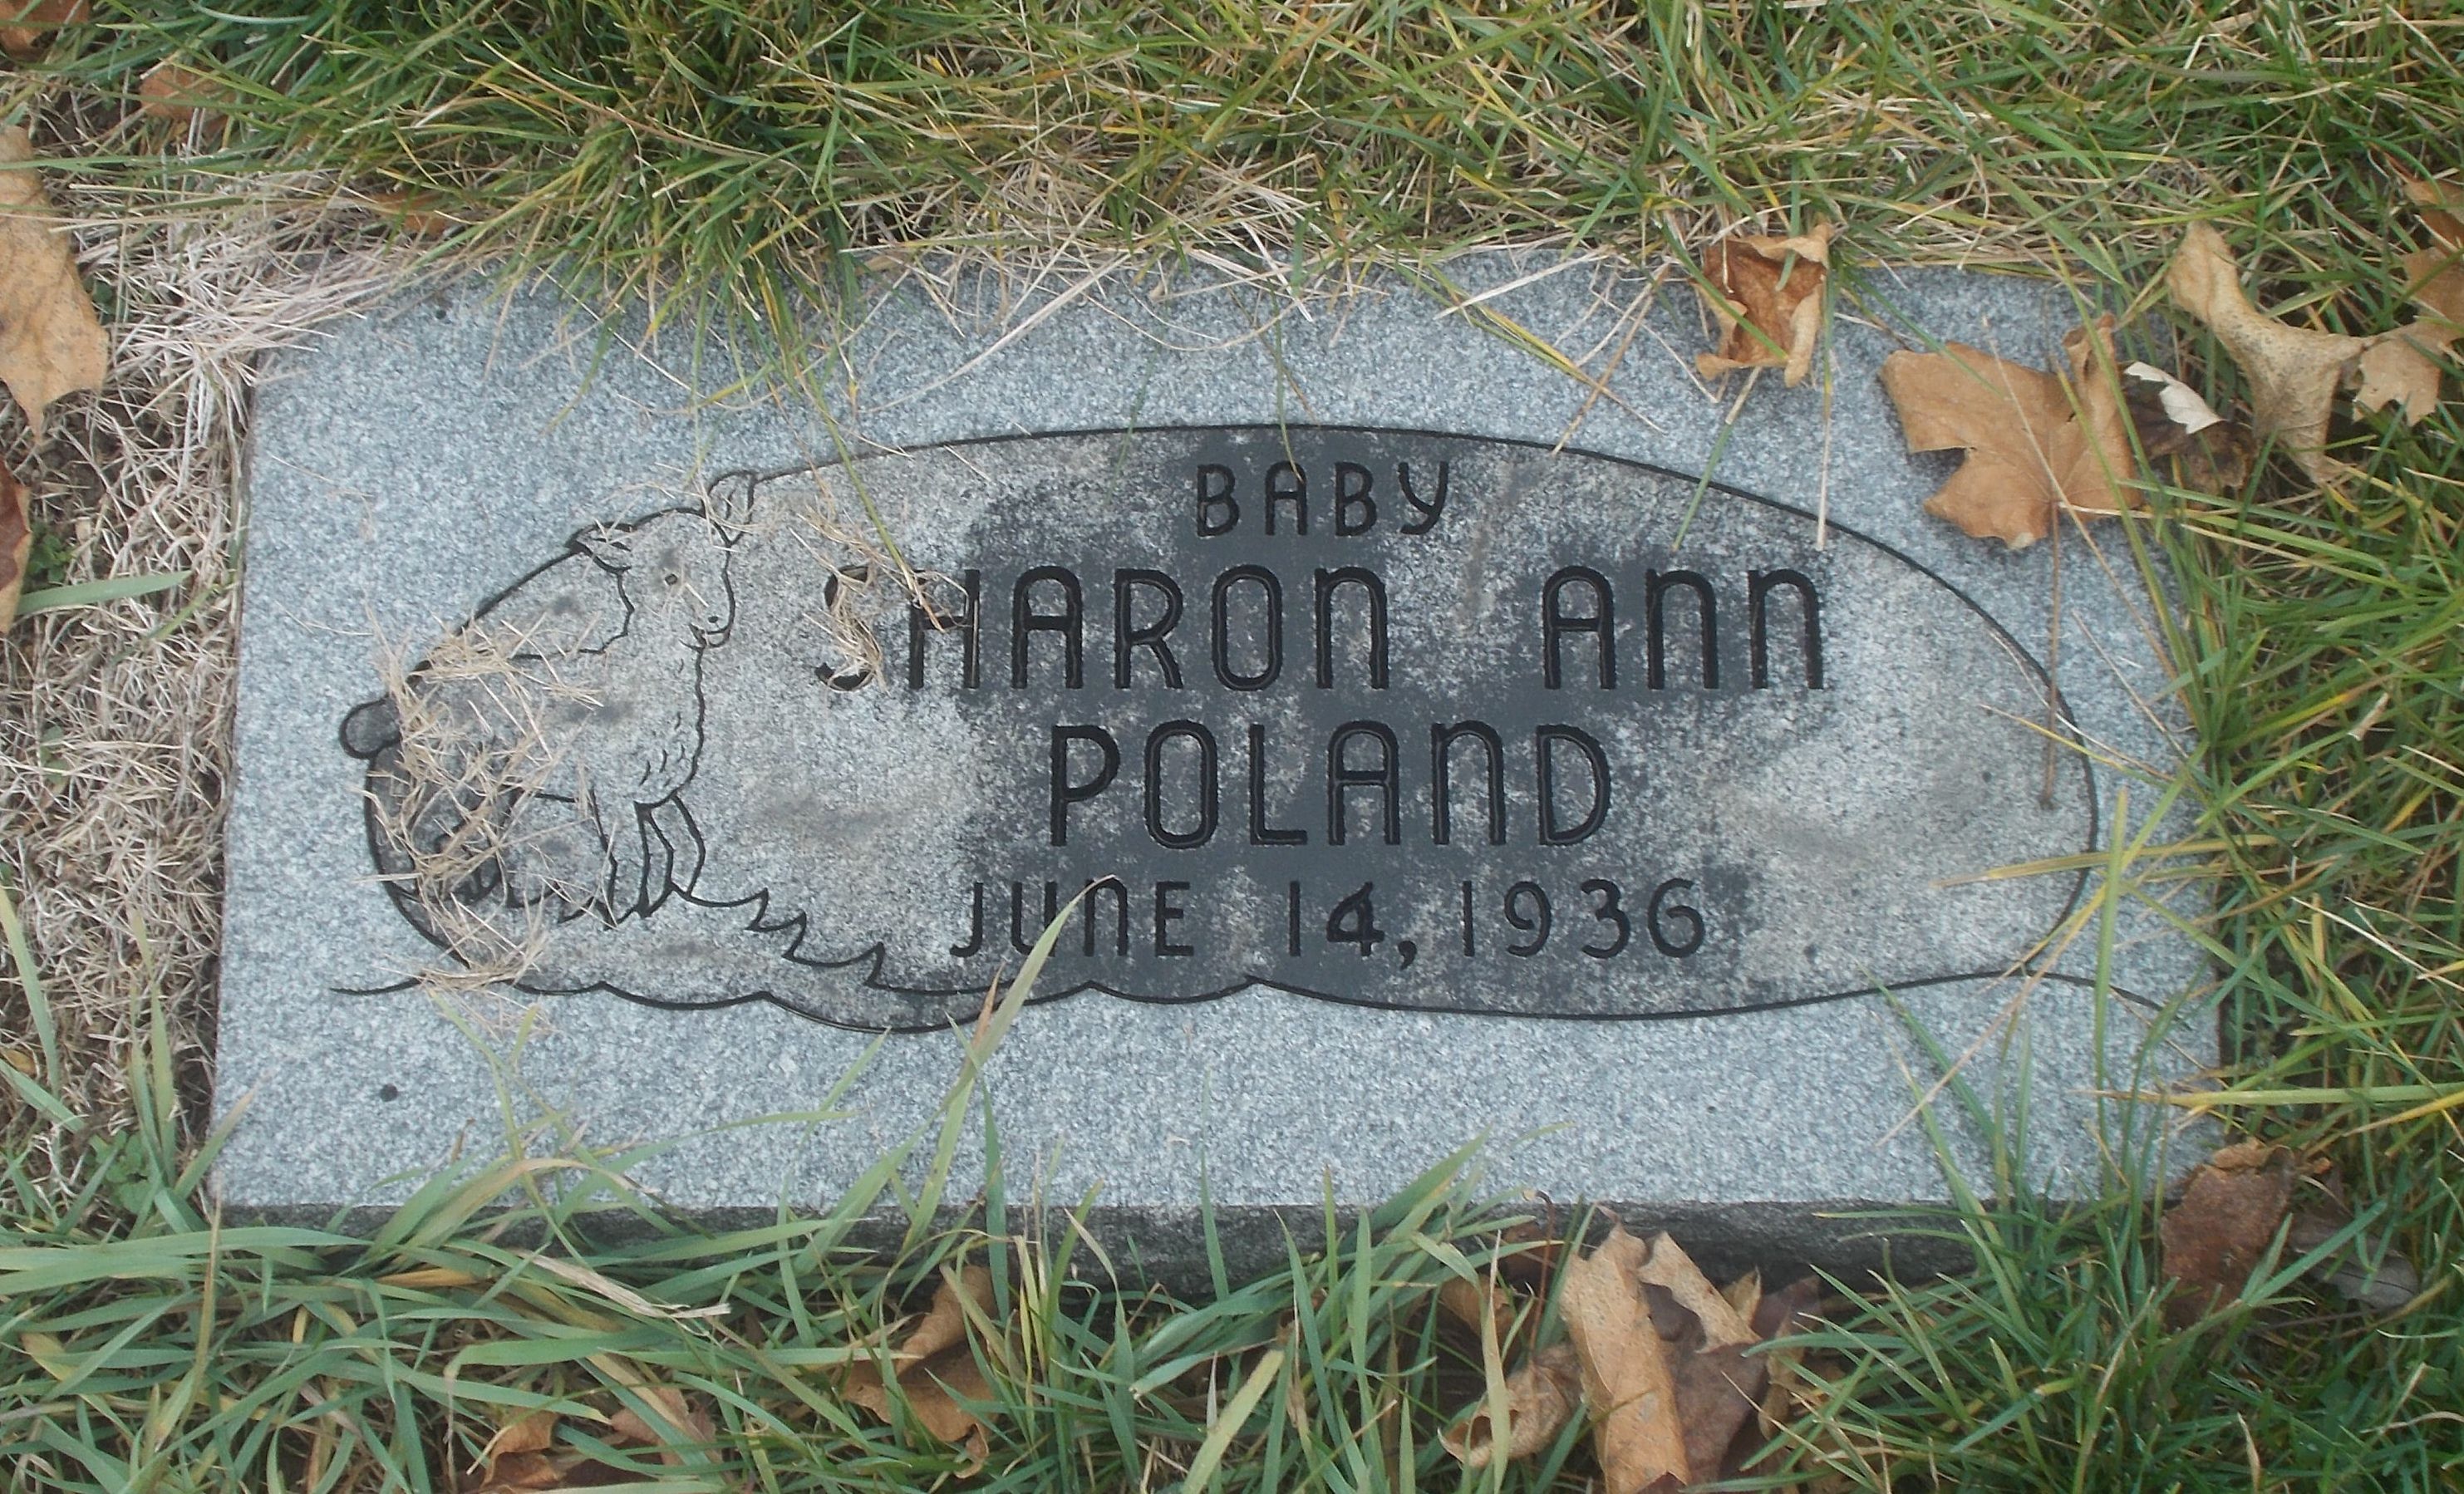 Sharon Ann Poland